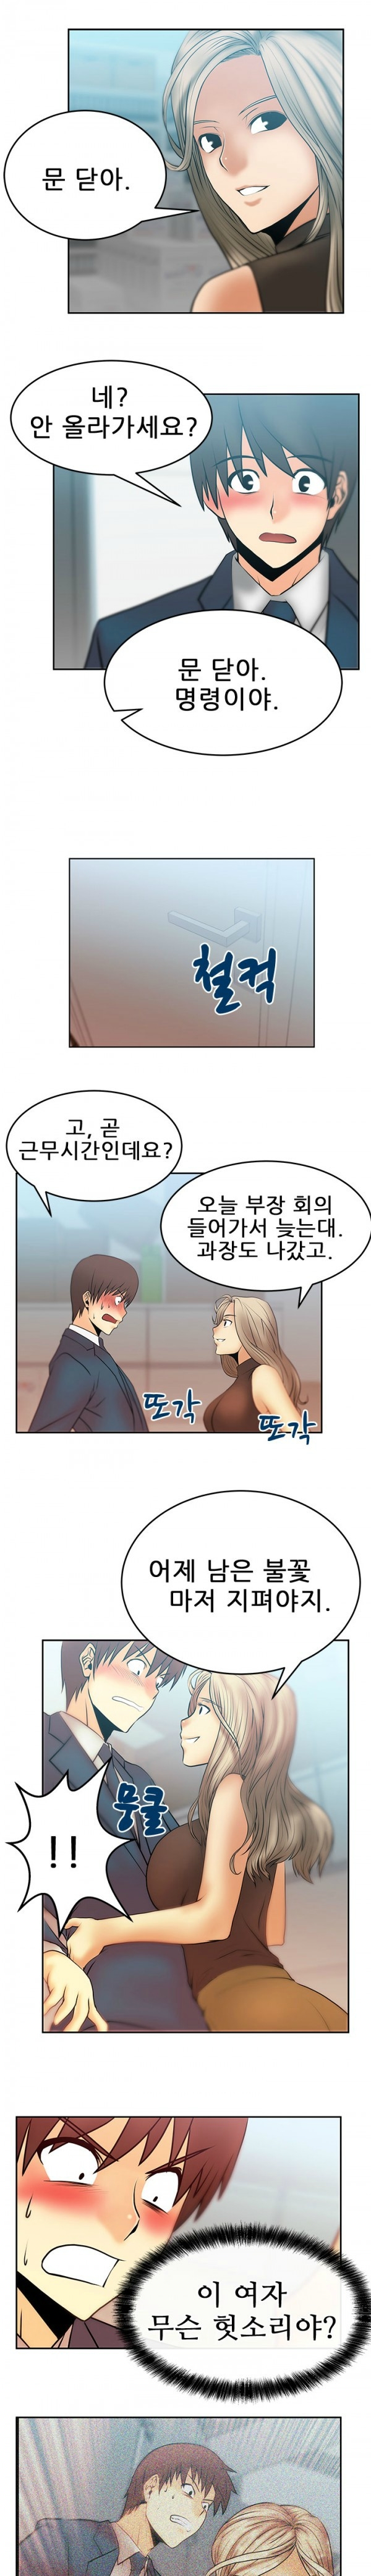 [Minu Mindu] Office Lady Vol. 1 [Korean] 158